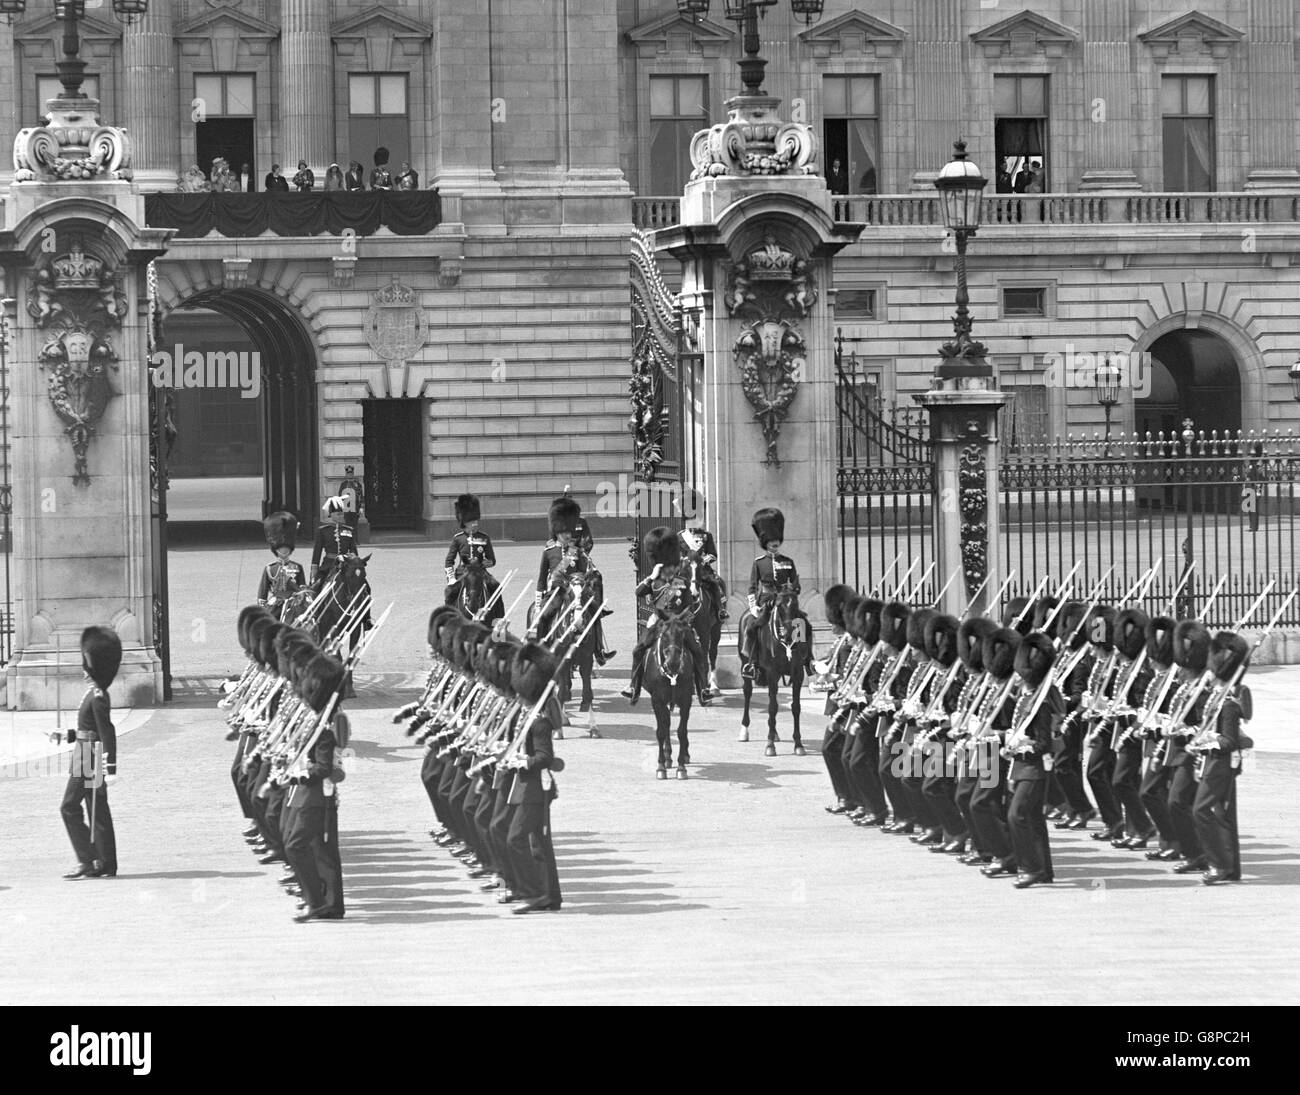 König George V und der Prinz von Wales beobachten die Truppen, die nach der Trooping the Color Zeremonie am Buckingham Palast vorbeimarschieren. Stockfoto